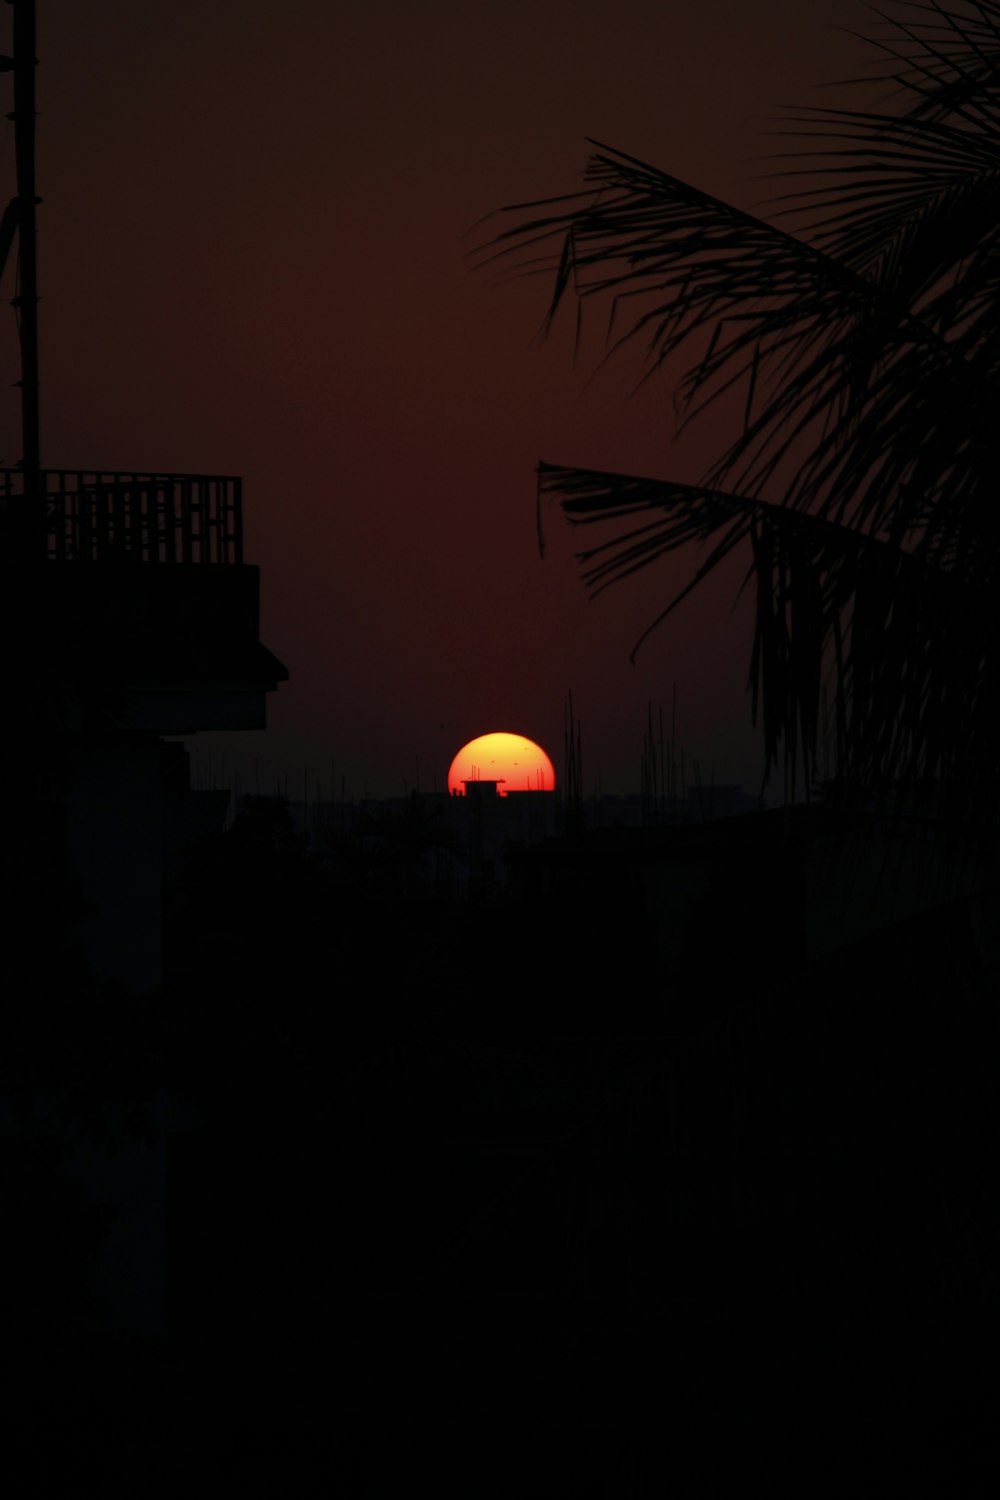 Le soleil se couche derrière un palmier